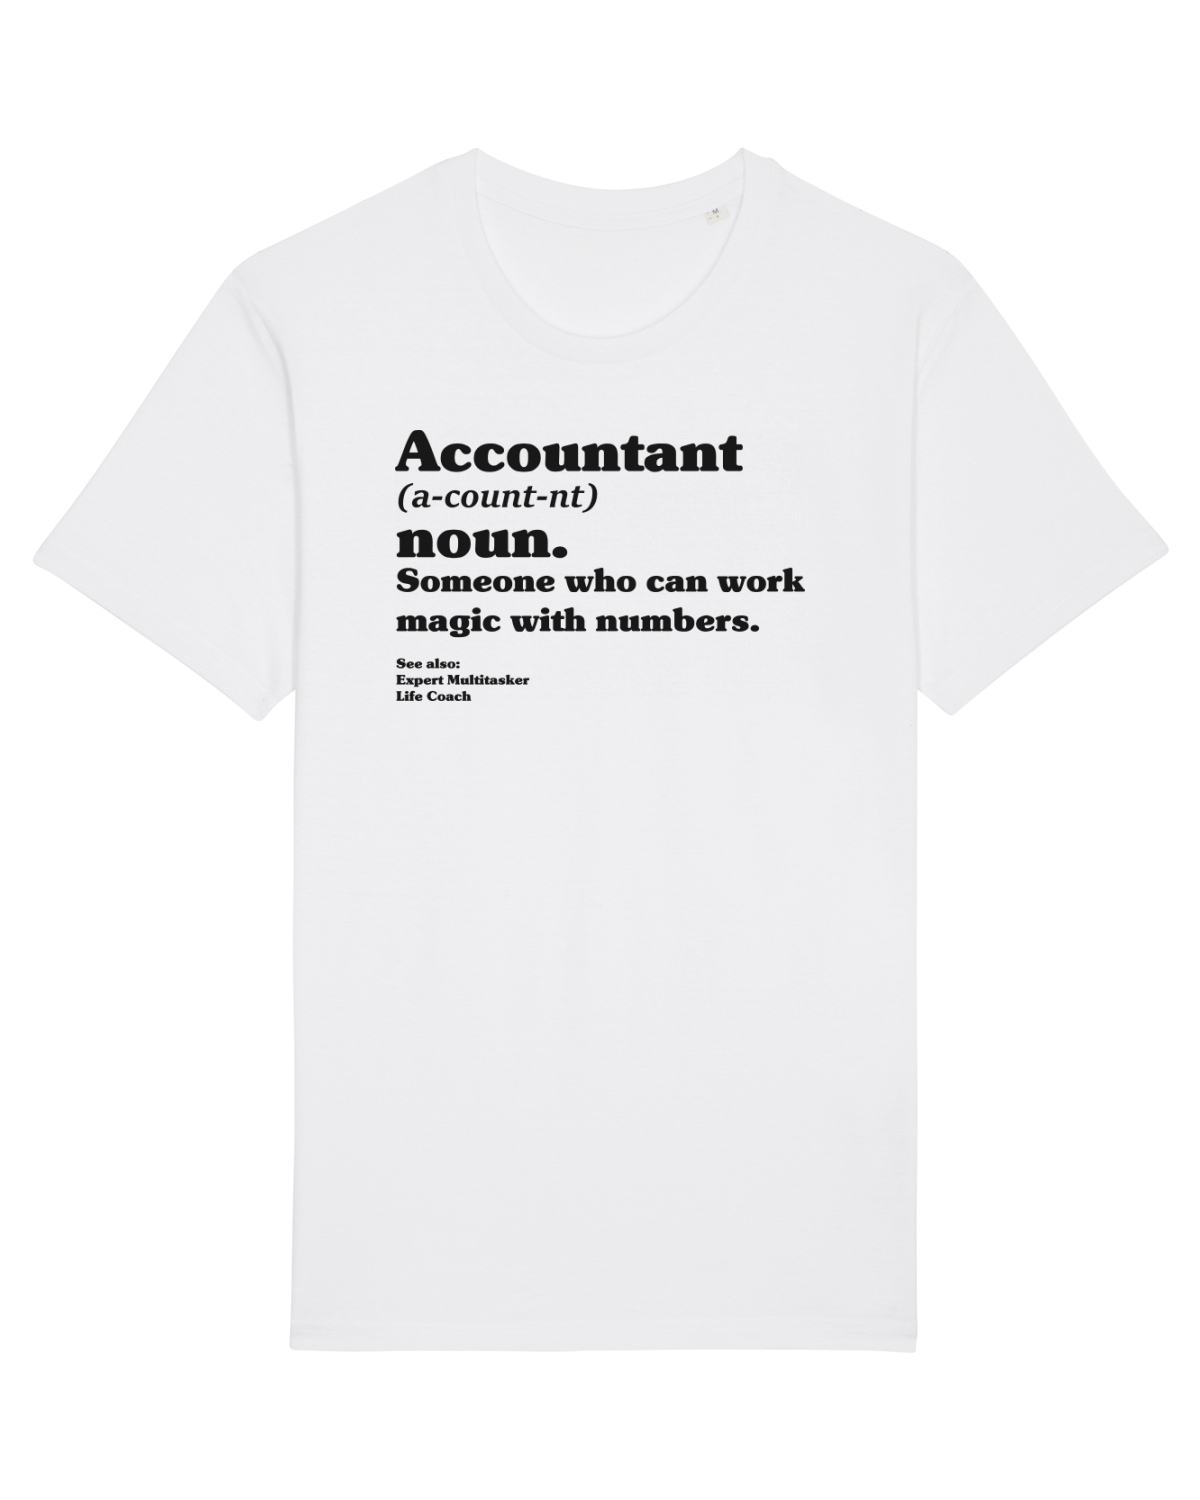 Accountant Noun